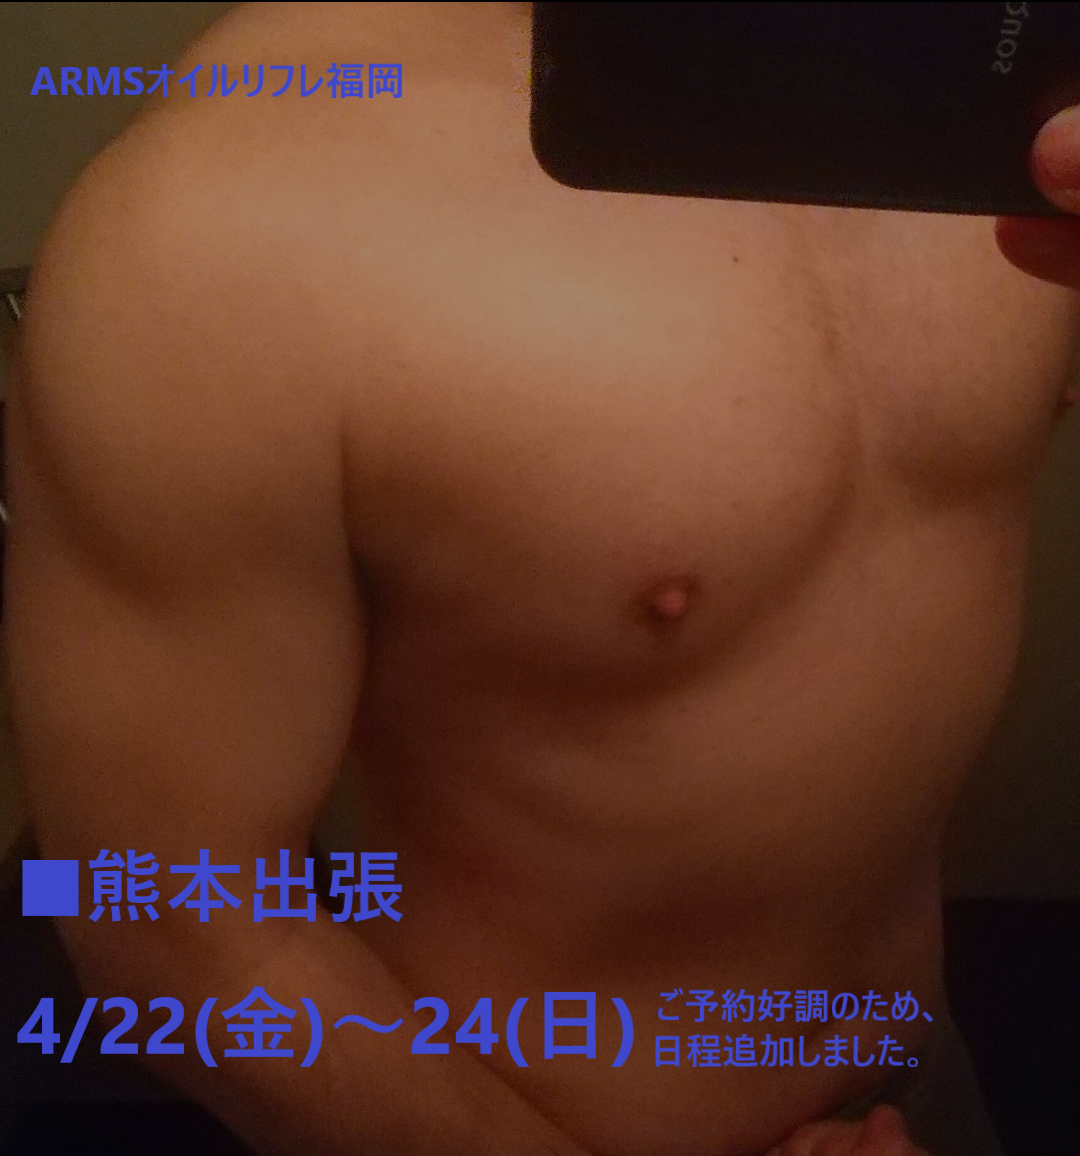 ■熊本出張　4/22(金)～24(日)←ご予約好調の為、日程追加しました。　ARMSオイルリフレ福岡